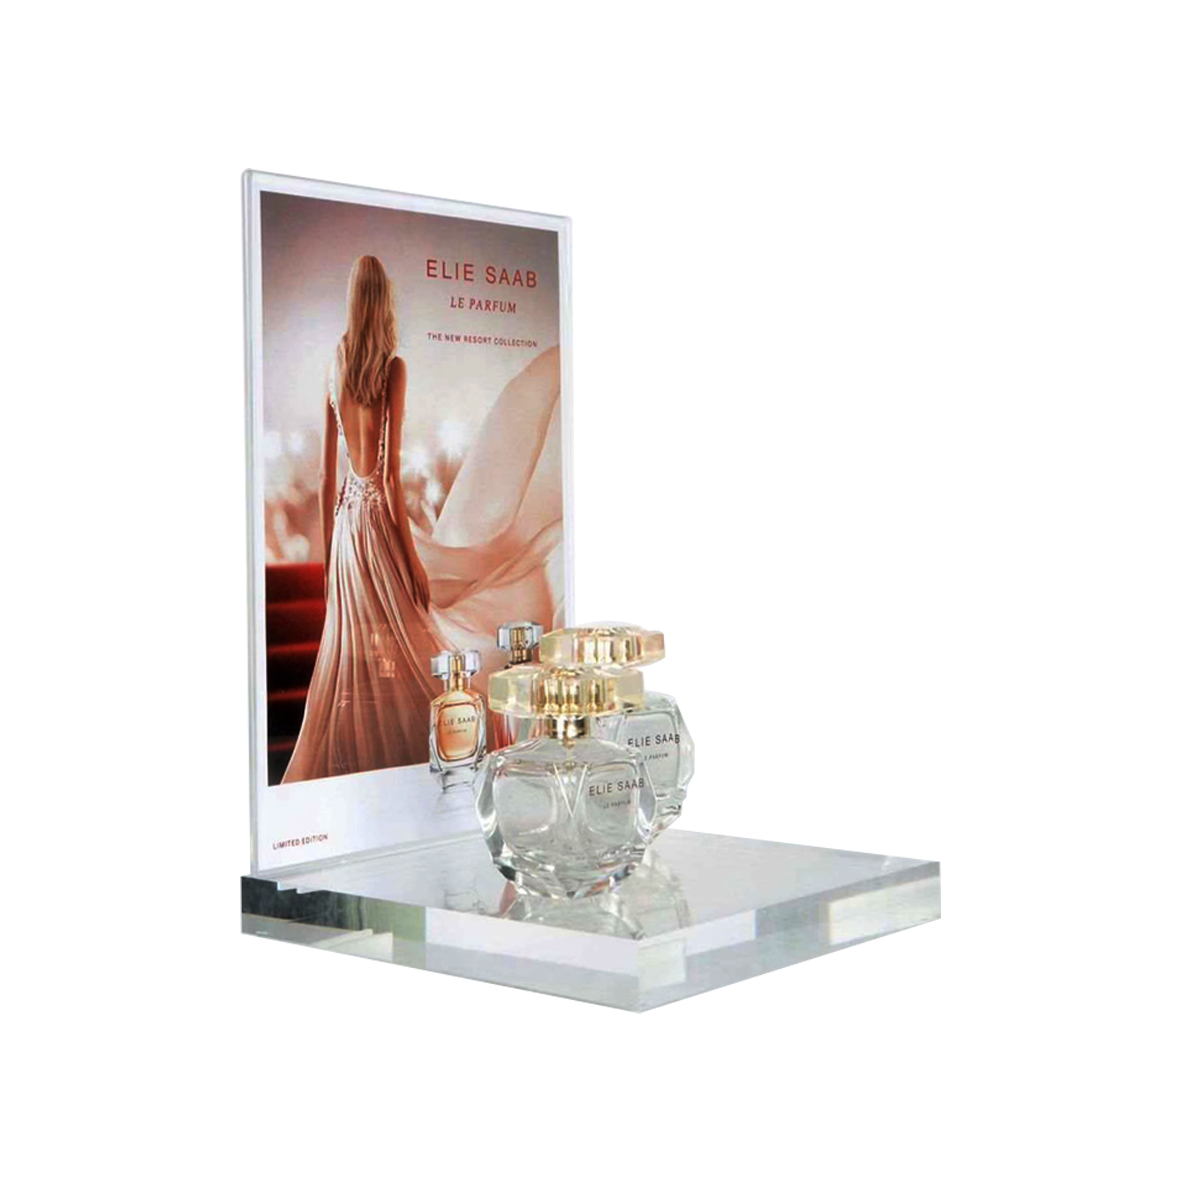 Customizable acrylic perfume bhodhoro kuratidza stand